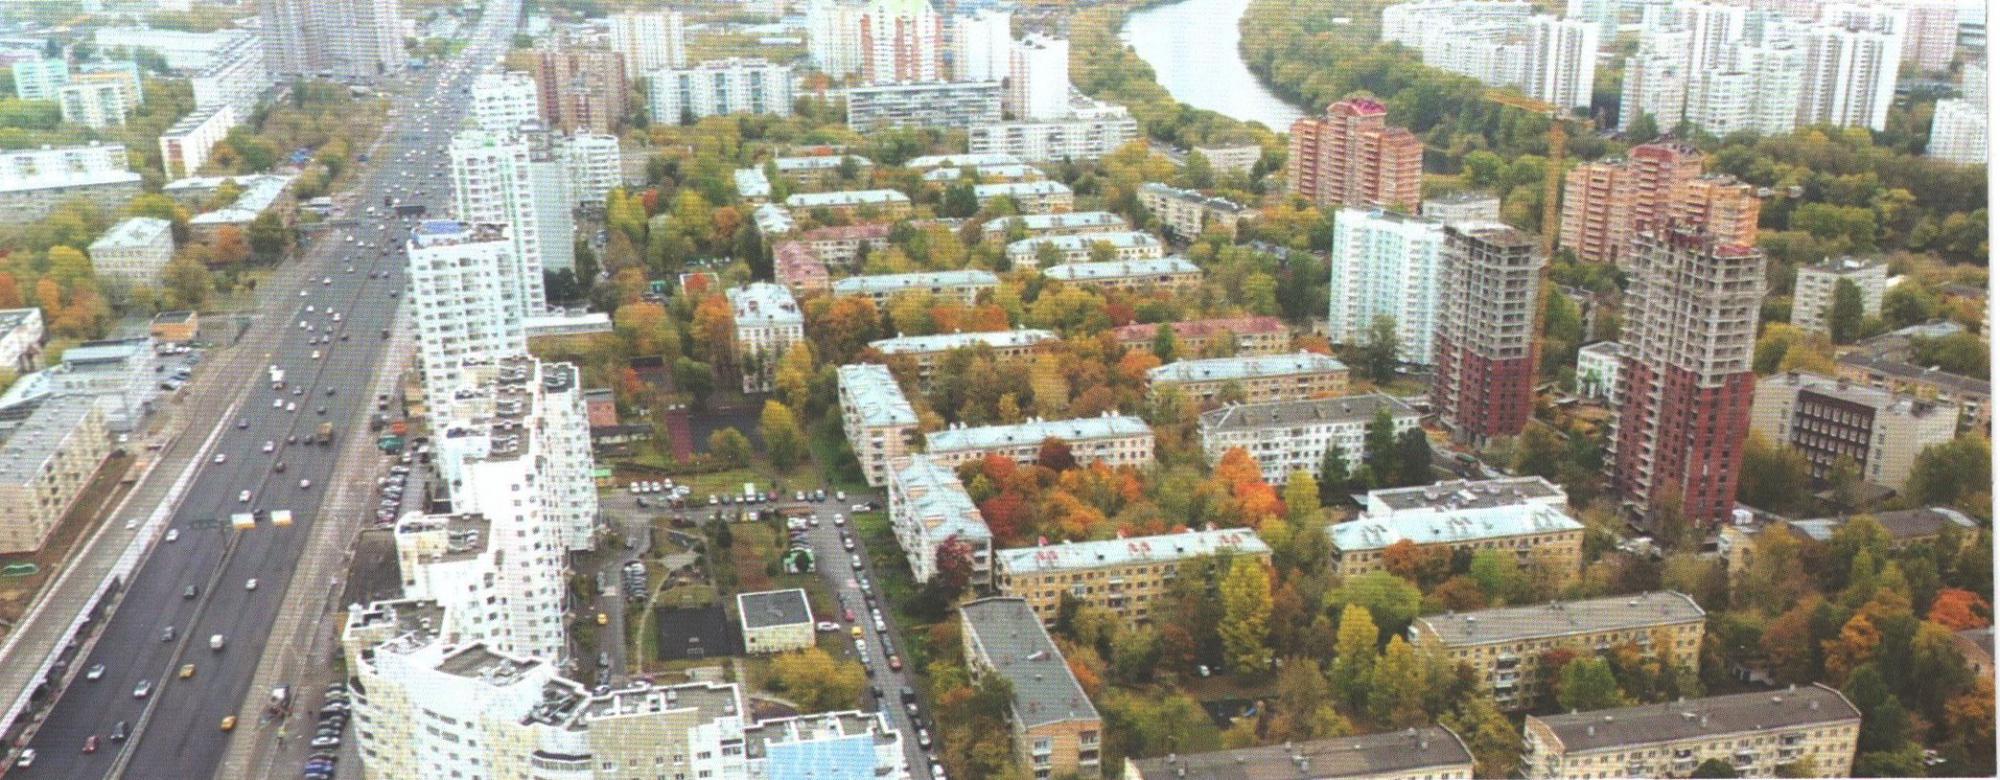 В районе Хорошёво-Мнёвники началось расселение дома по реновации — Комплекс градостроительной политики и строительства города Москвы